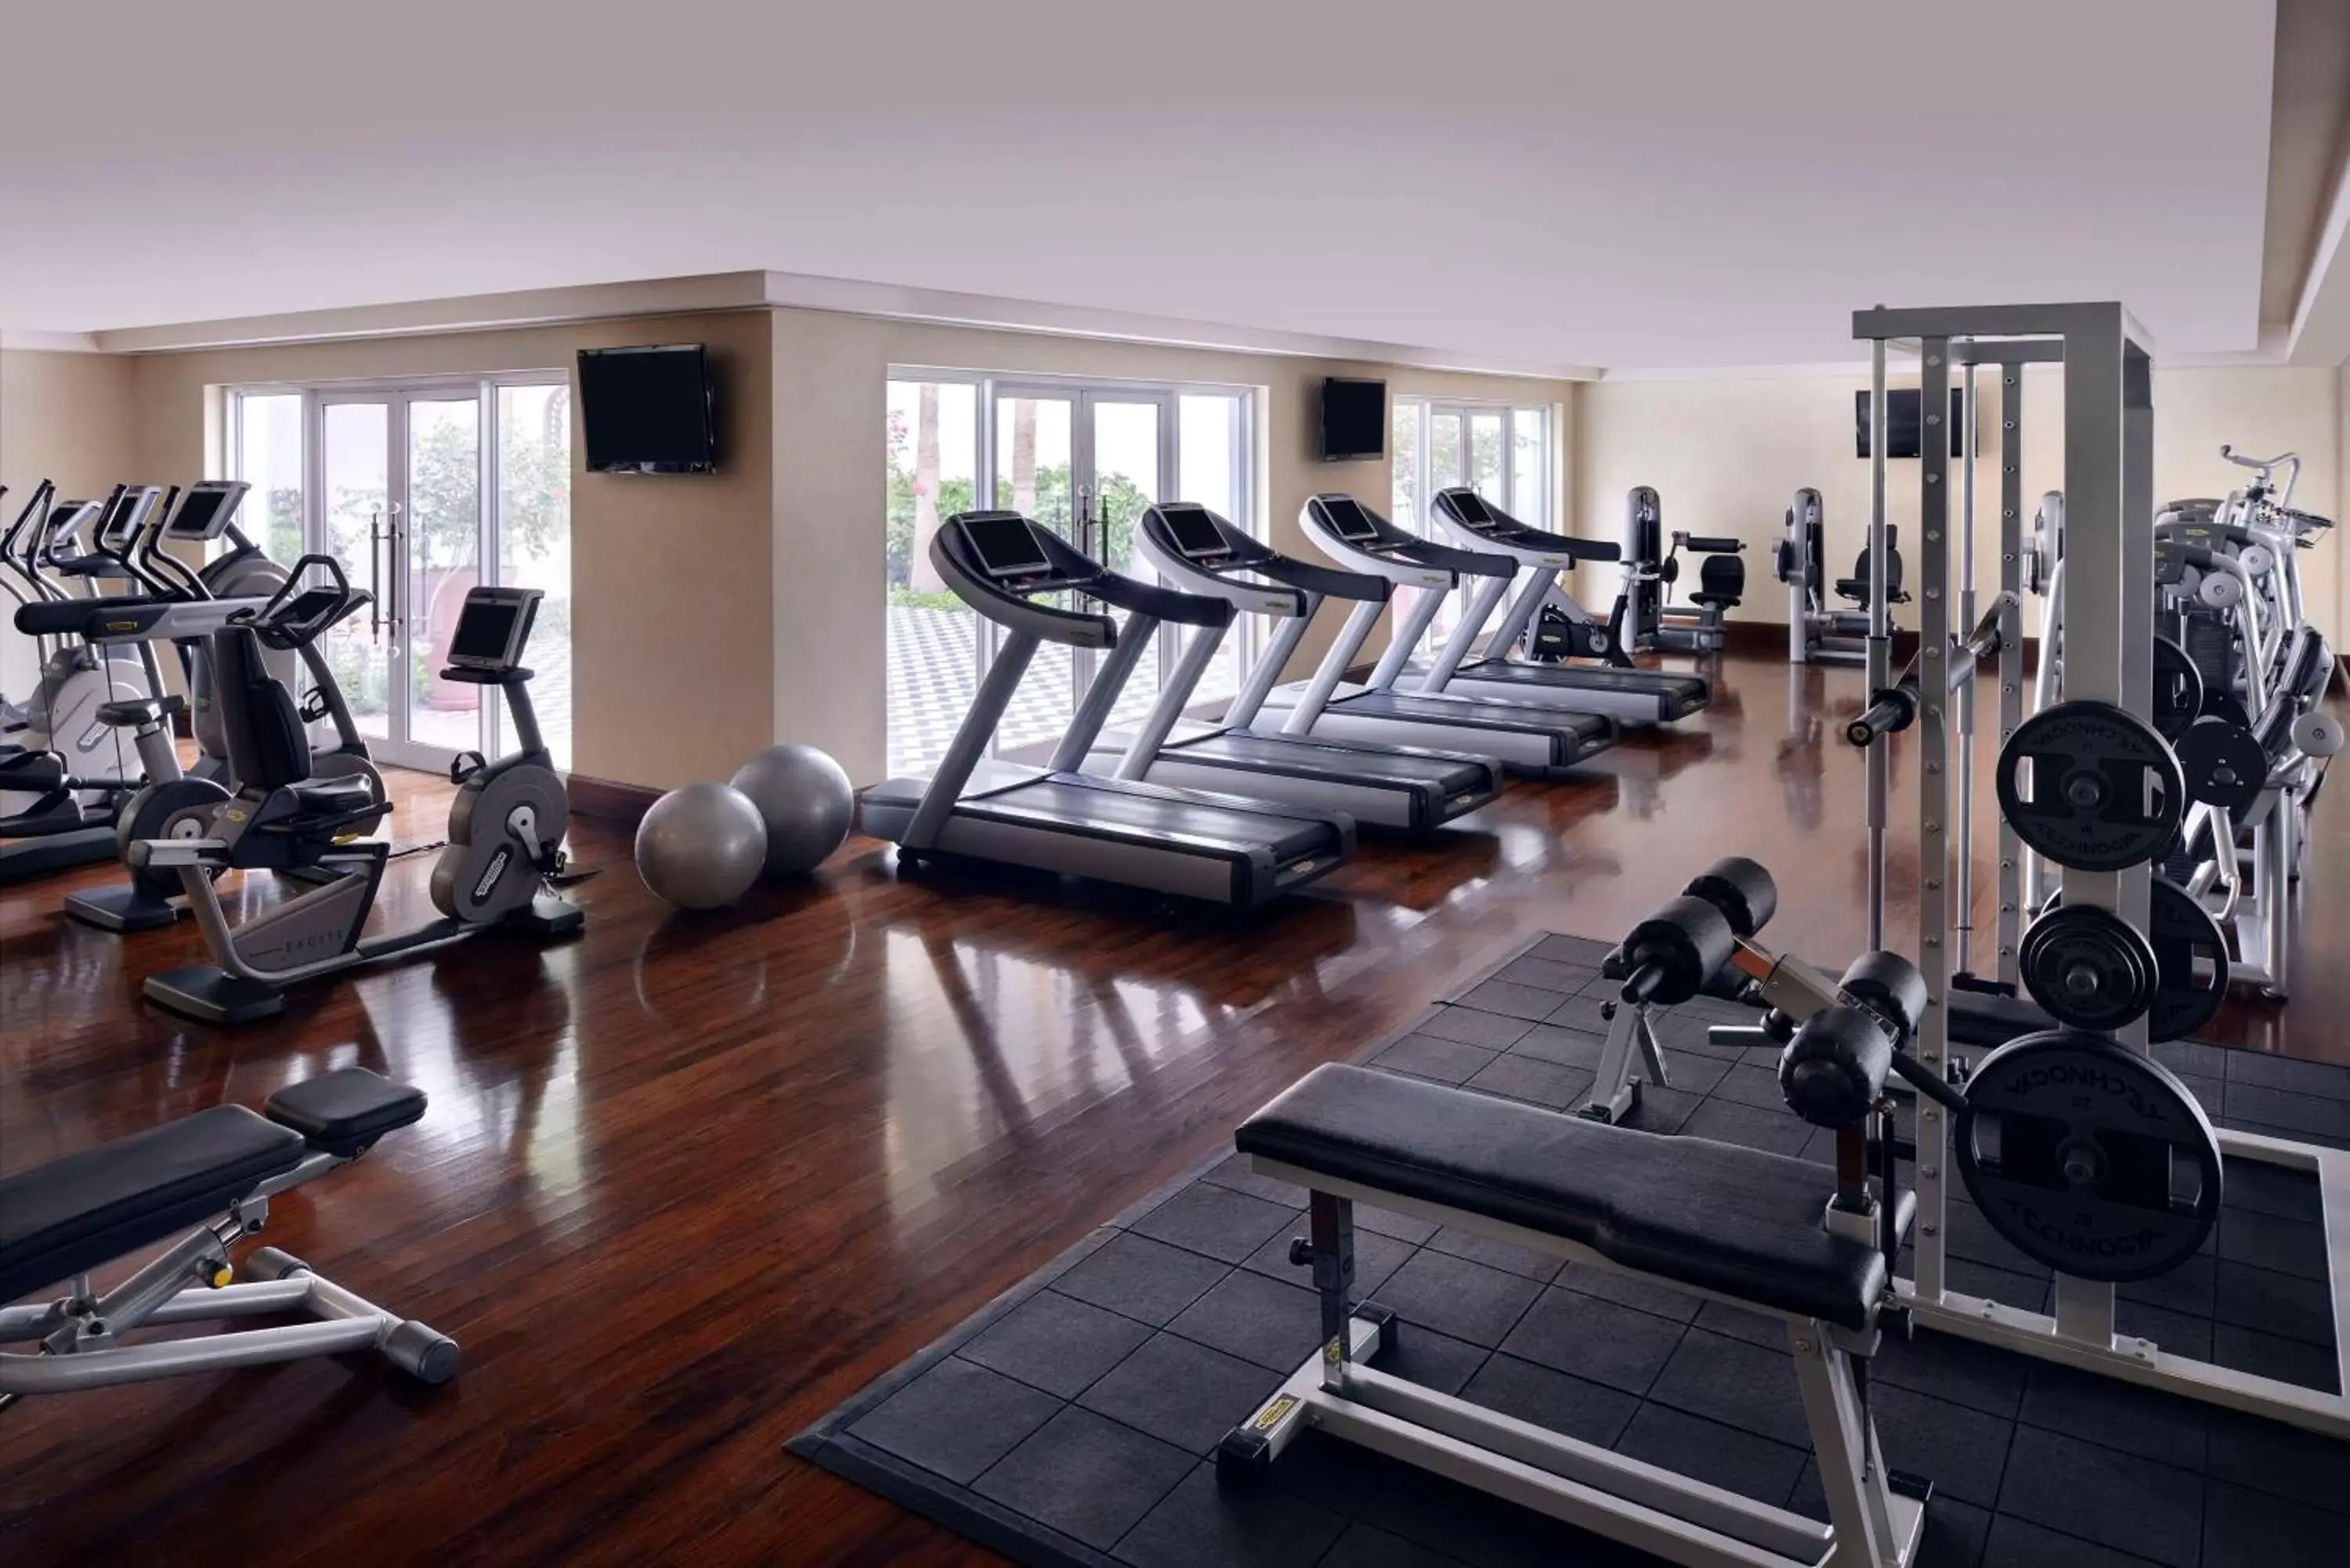 Fitness centre/facilities, Fitness Center/Facilities in Park Hyatt Dubai